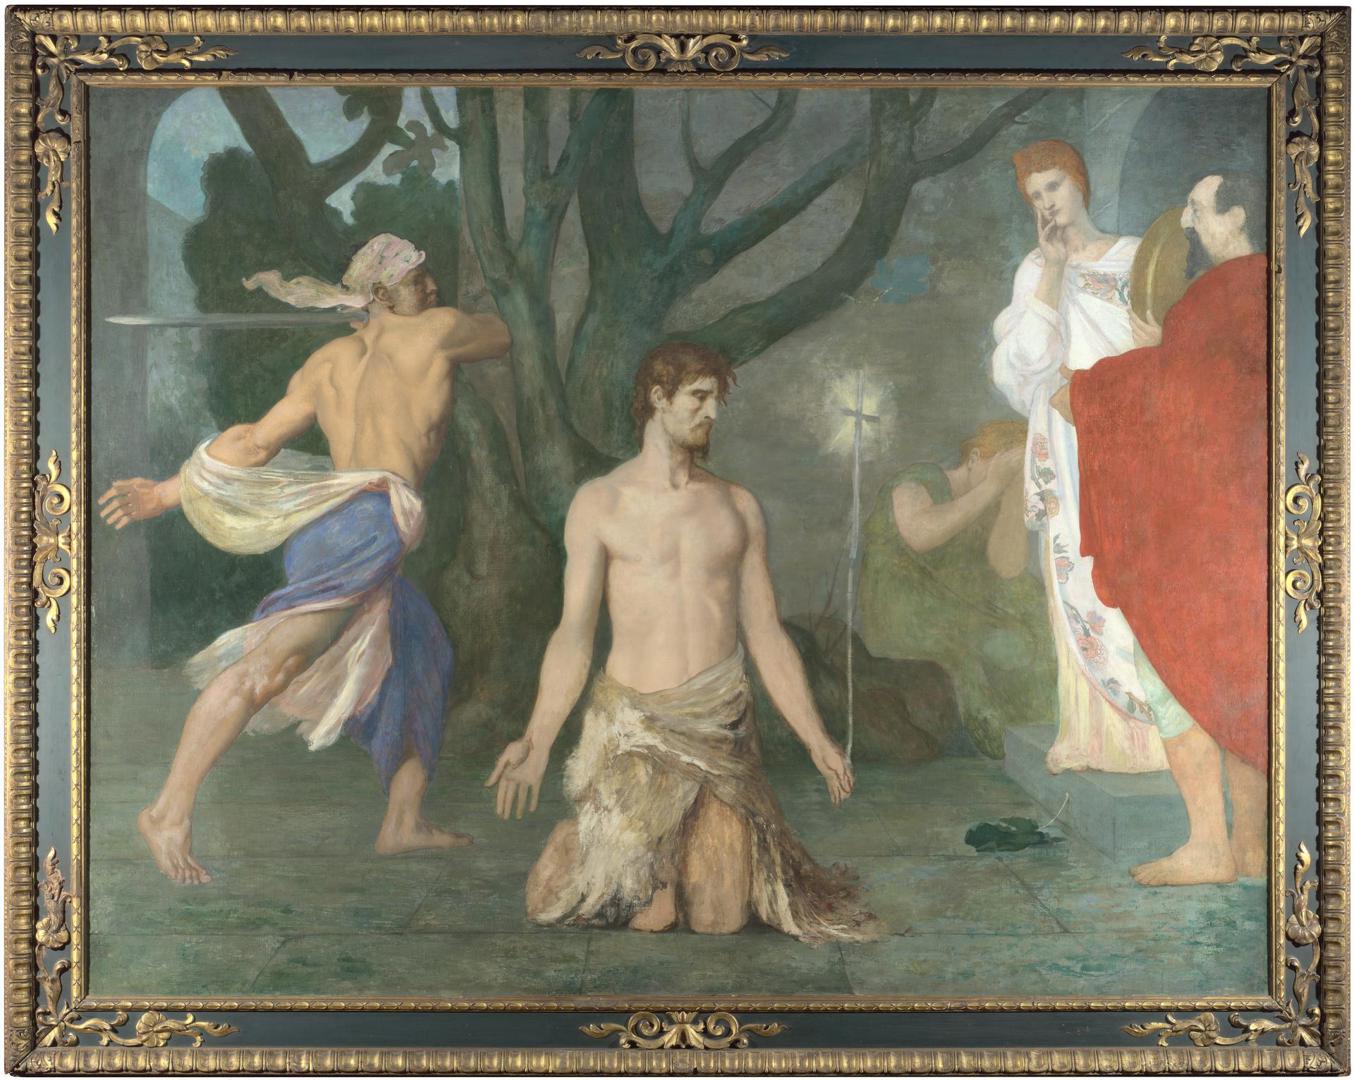 The Beheading of Saint John the Baptist by Pierre-Cécile Puvis de Chavannes